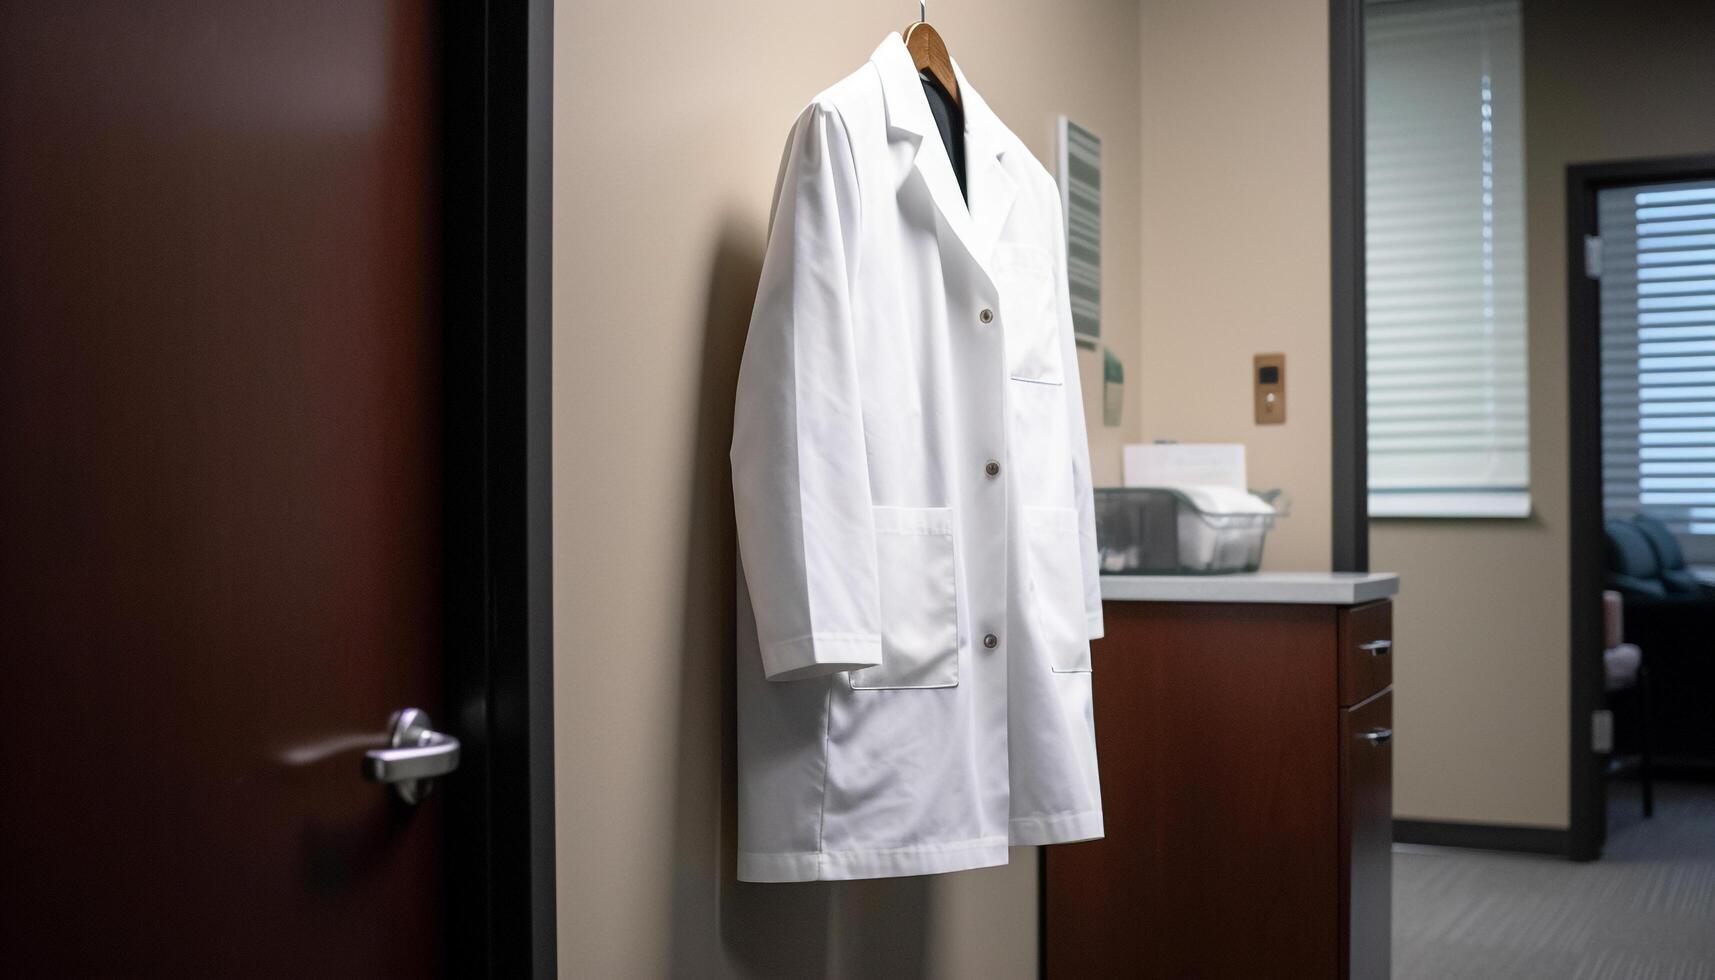 Modern healthcare expert in lab coat standing in luxury bedroom photo